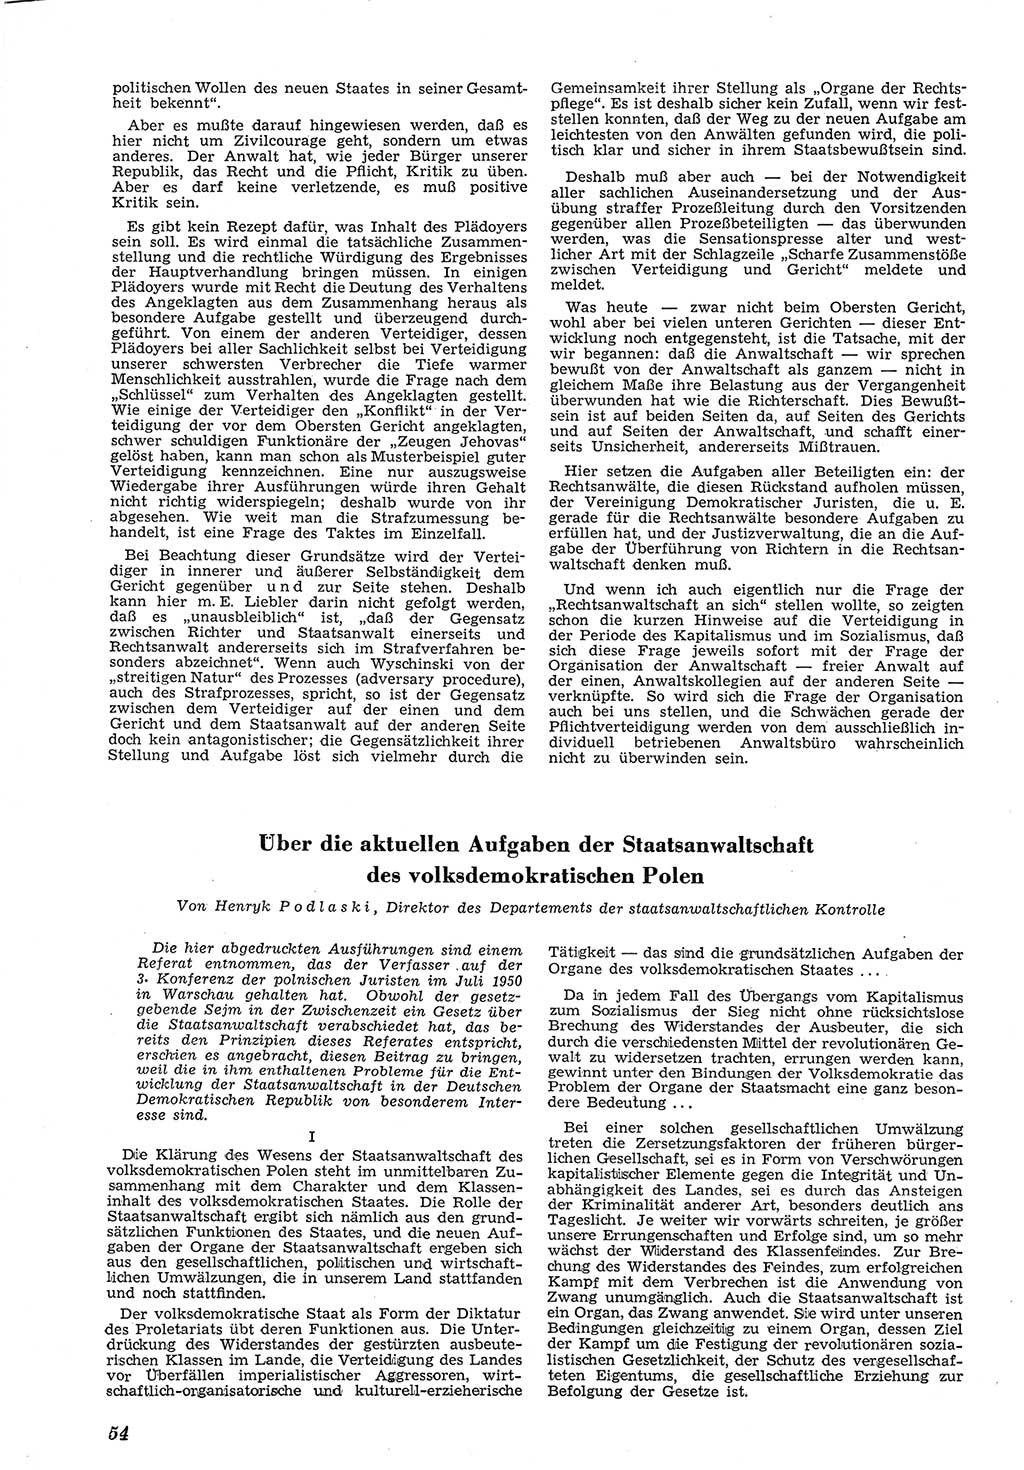 Neue Justiz (NJ), Zeitschrift für Recht und Rechtswissenschaft [Deutsche Demokratische Republik (DDR)], 5. Jahrgang 1951, Seite 54 (NJ DDR 1951, S. 54)